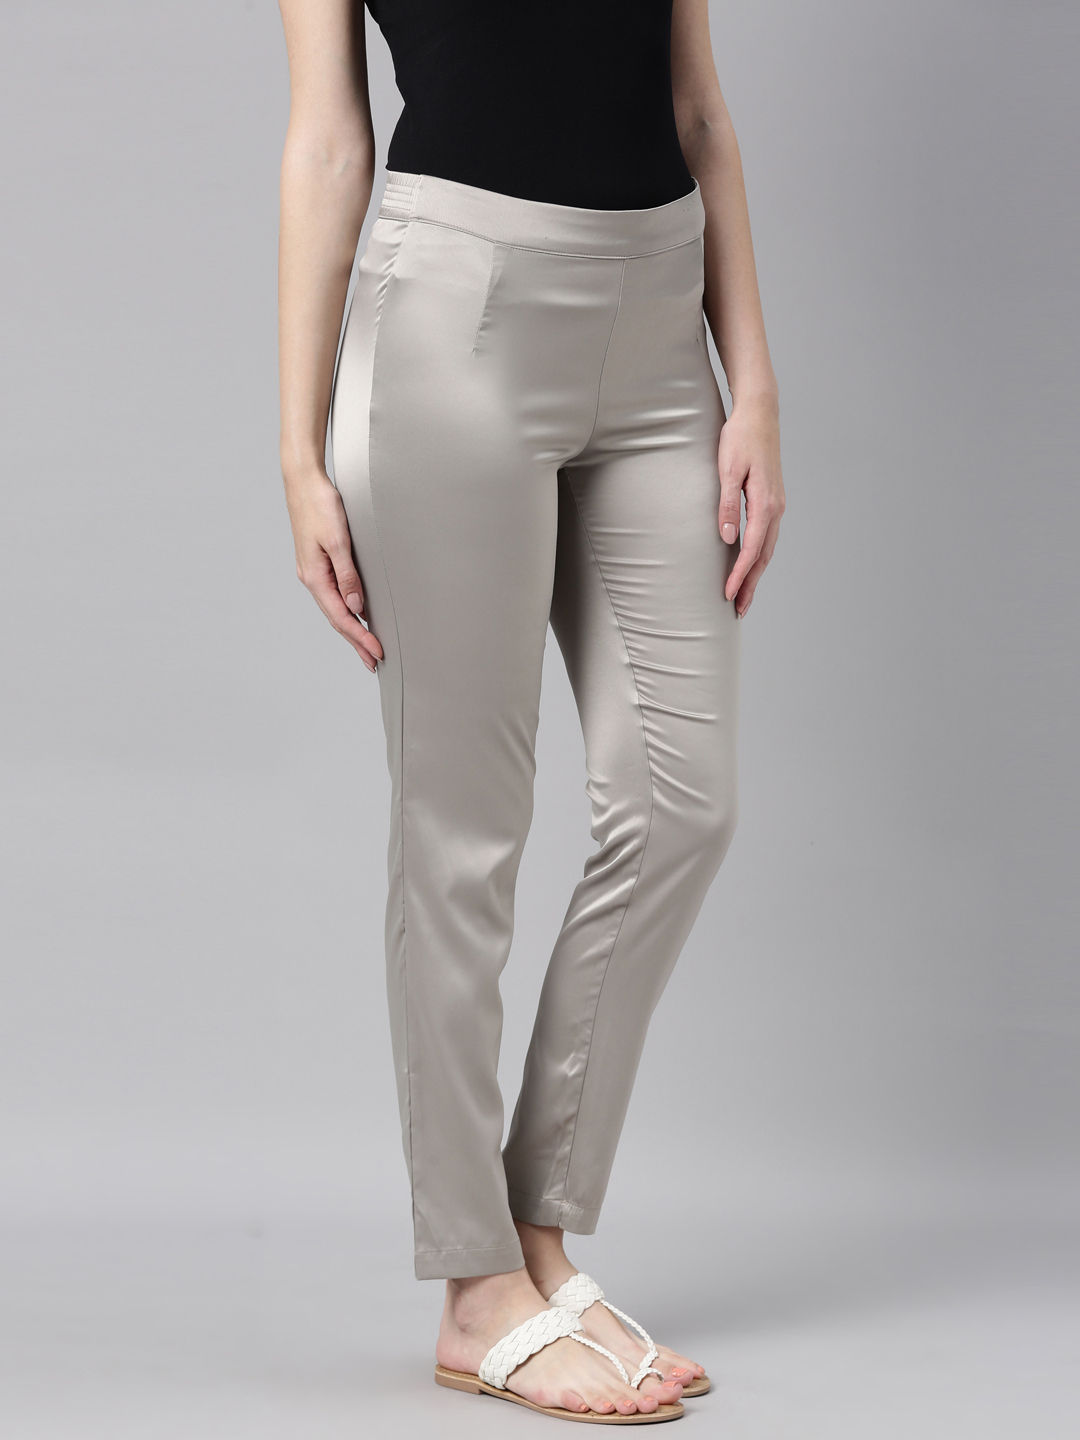 Women Wet LOOK Shiny Vinyl Leggings Trouser PU Leather Zipper Open Crotch  Pants  eBay